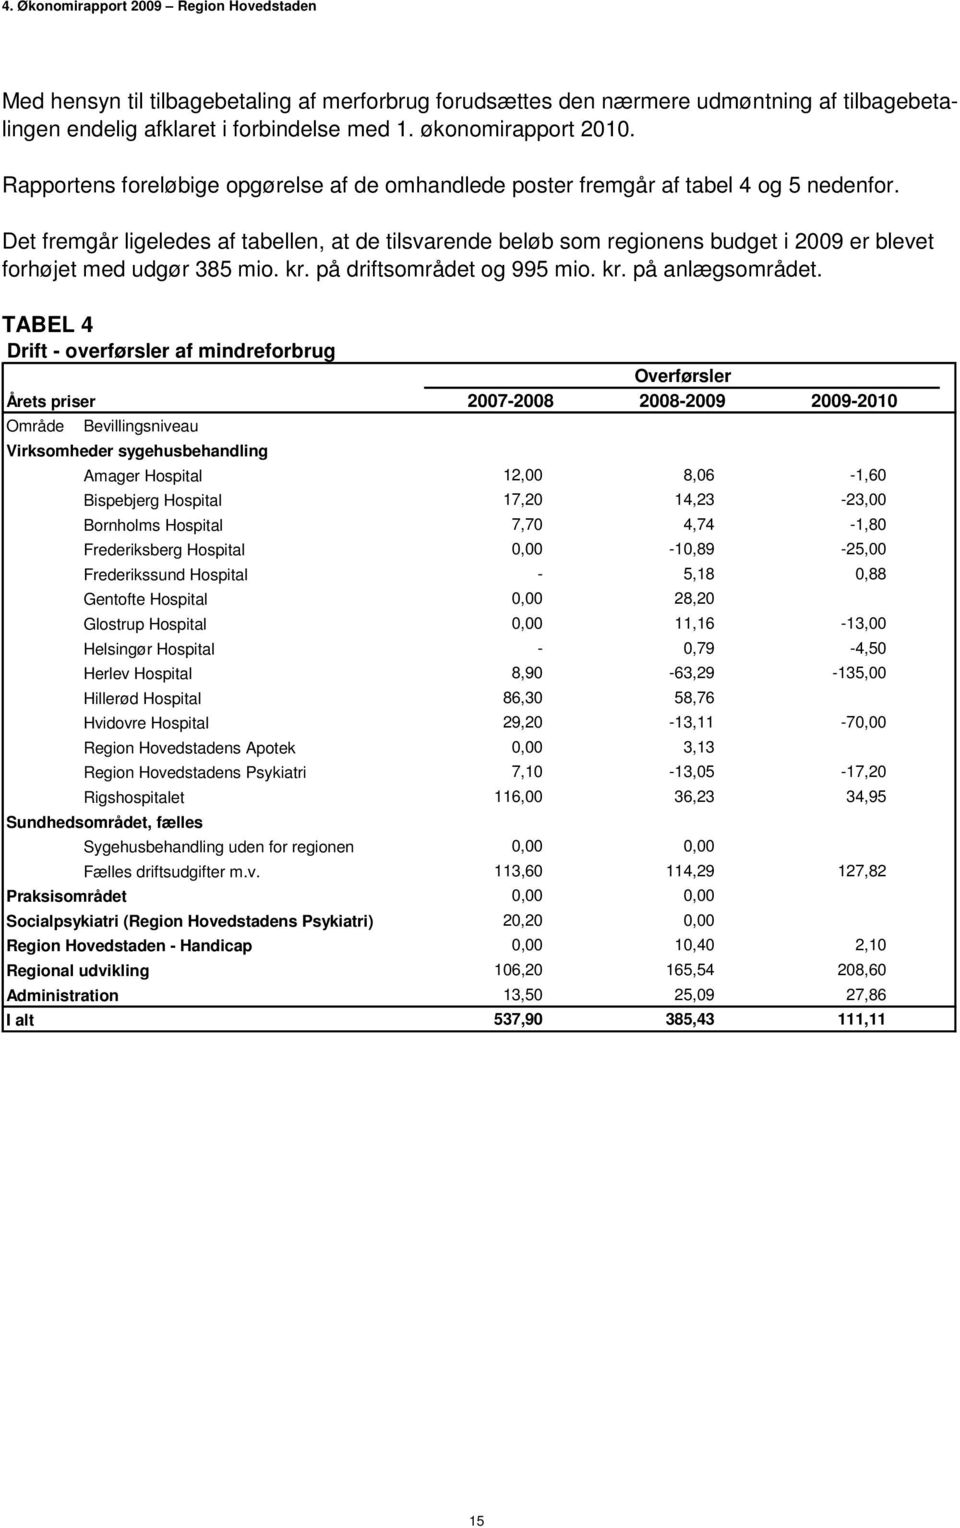 Det fremgår ligeledes af tabellen, at de tilsvarende beløb som regionens budget i 2009 er blevet forhøjet med udgør 385 mio. kr. på driftsområdet og 995 mio. kr. på anlægsområdet.